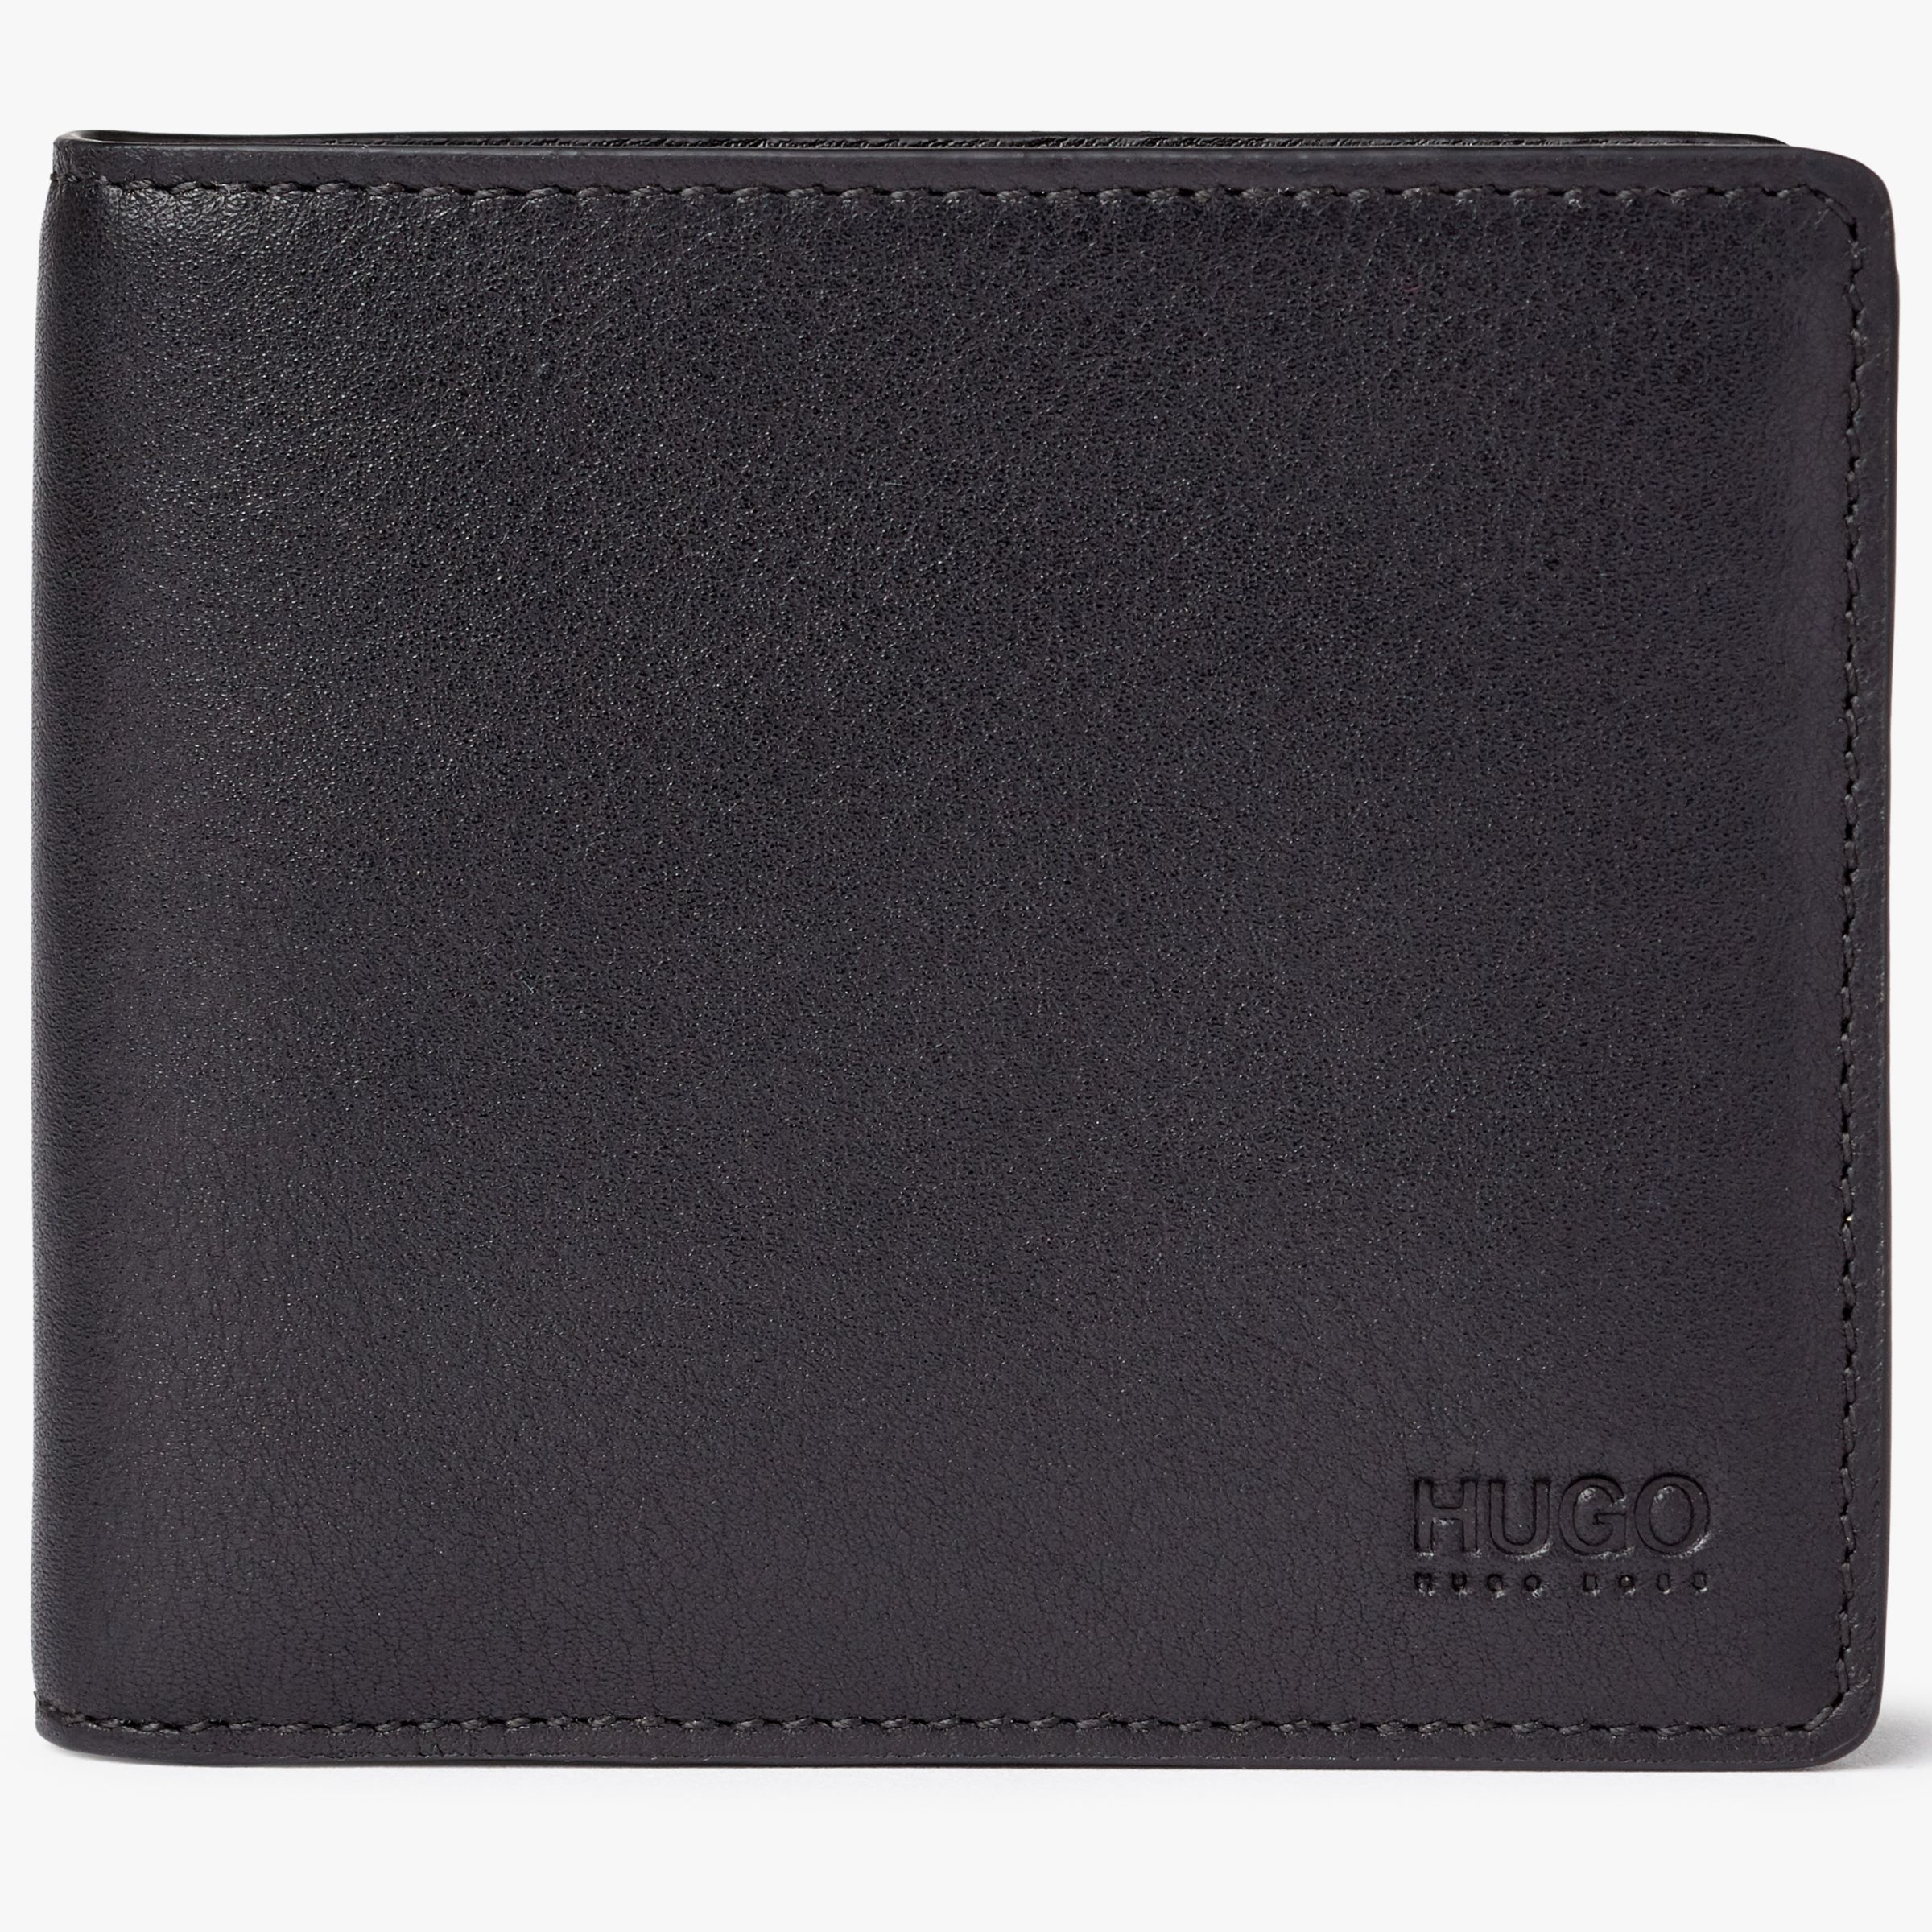 hugo boss wallet for mens